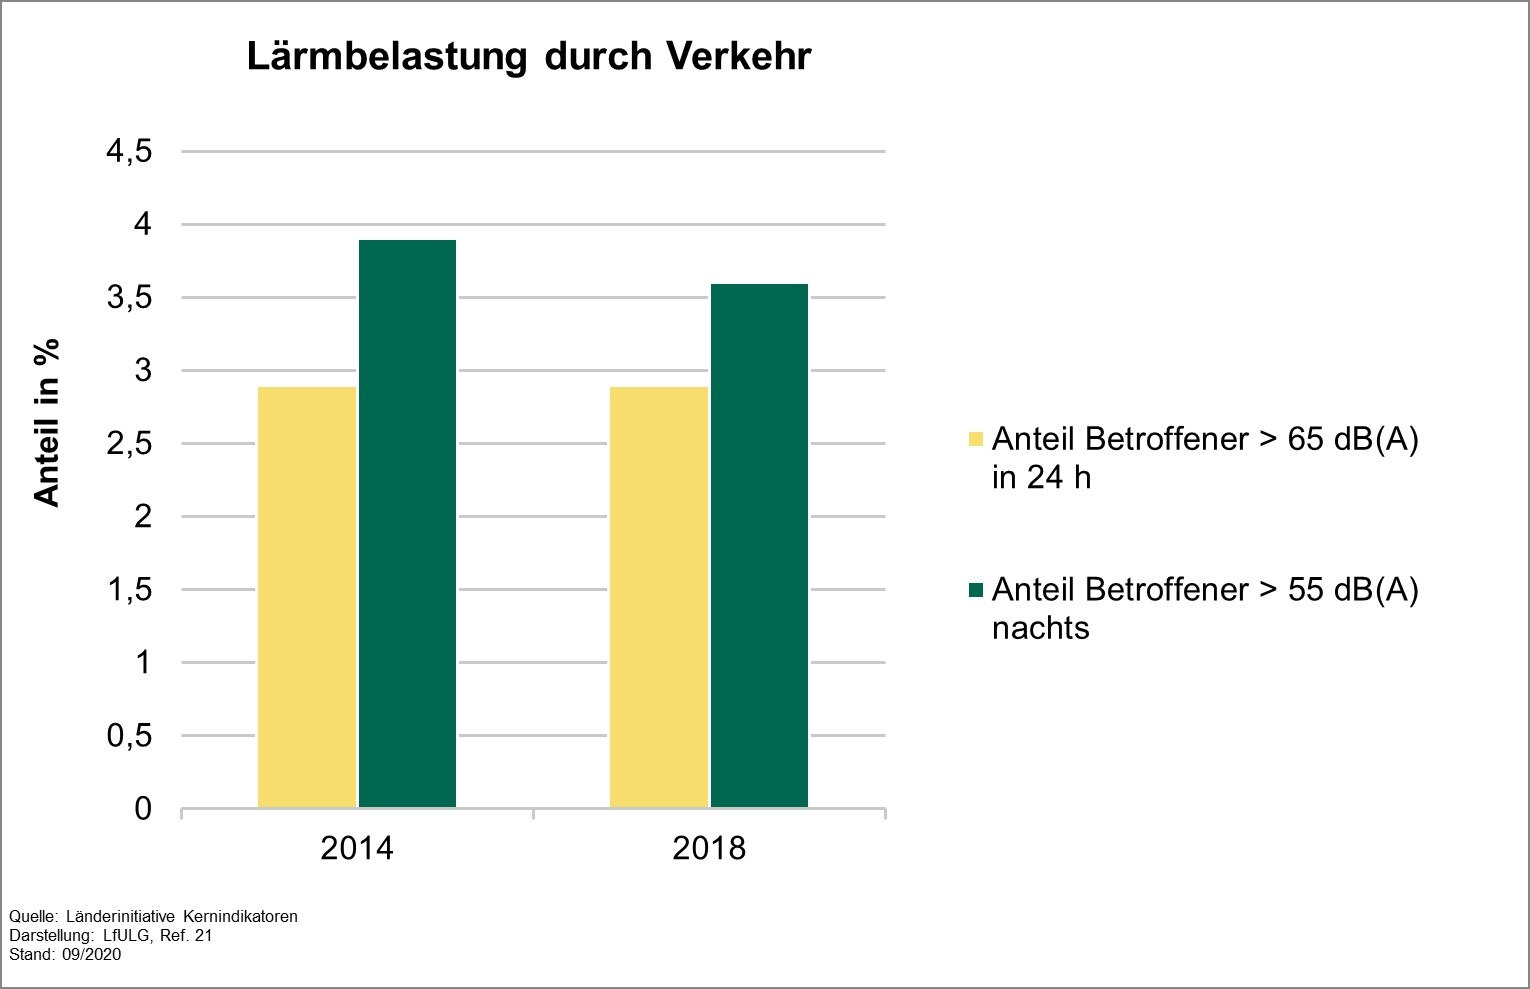 Die Grafik zeigt die Entwicklung des Indikators Lärmbelastung durch Verkehr in Sachsen und Deutschland für die Jahre 2014 und 2018. In Sachsen blieben die Werte für tags und nachts konstant beziehungsweise verringerten sich minimal. 